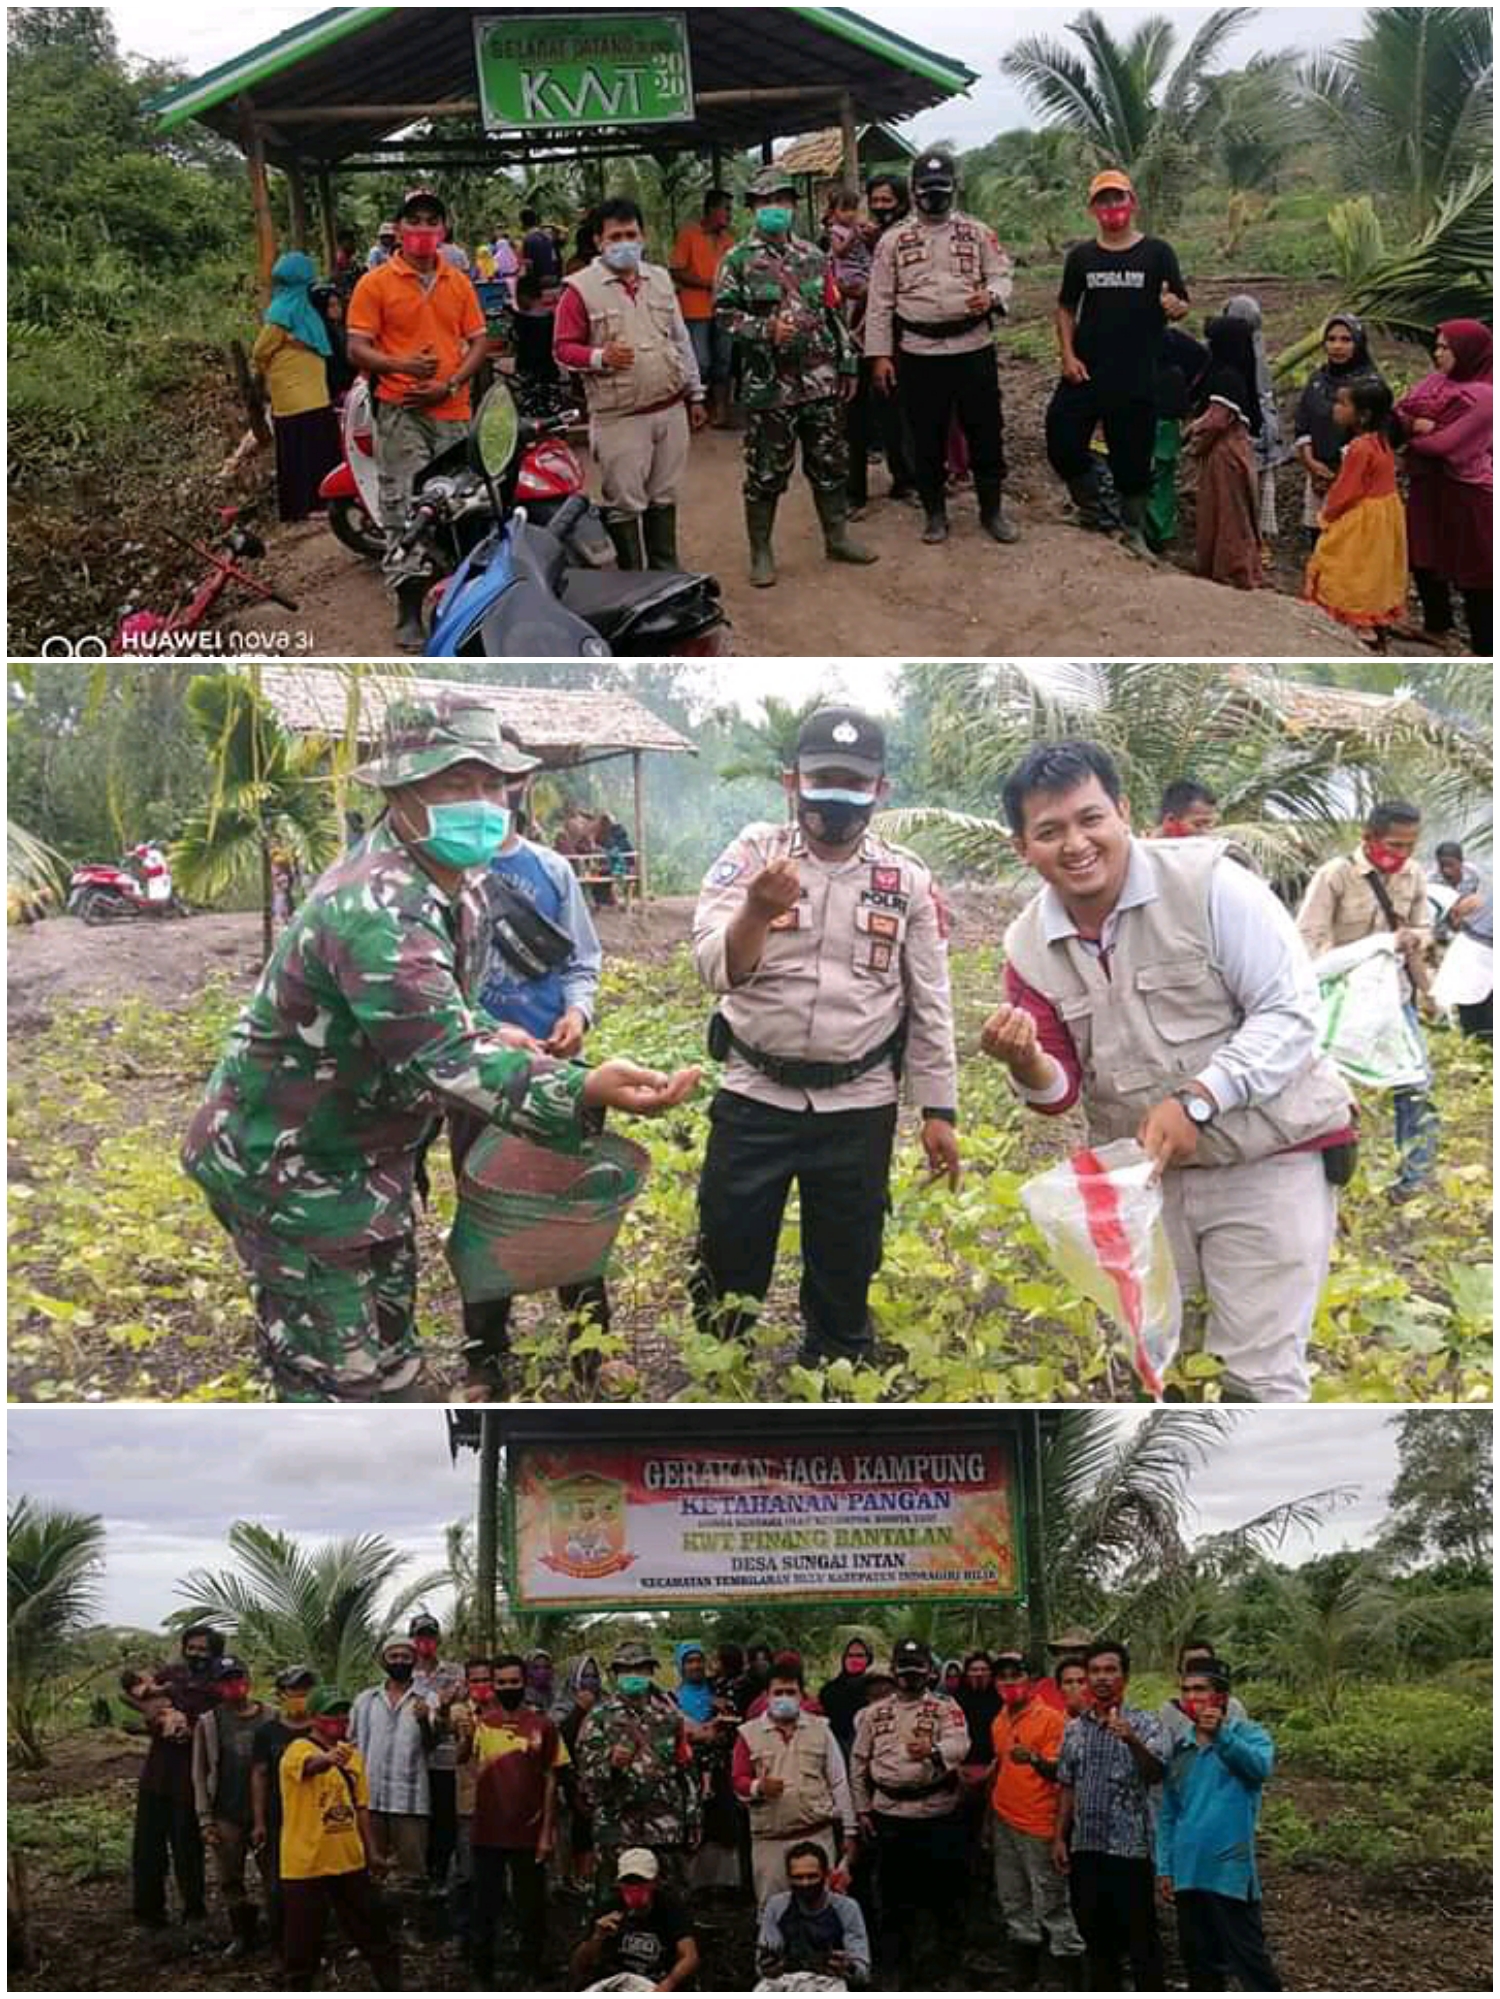 Desa Sungai Intan Panen Kacang Hijau Program Gerakan Jaga Kampung Dalam Rangka Ketahanan Pangan